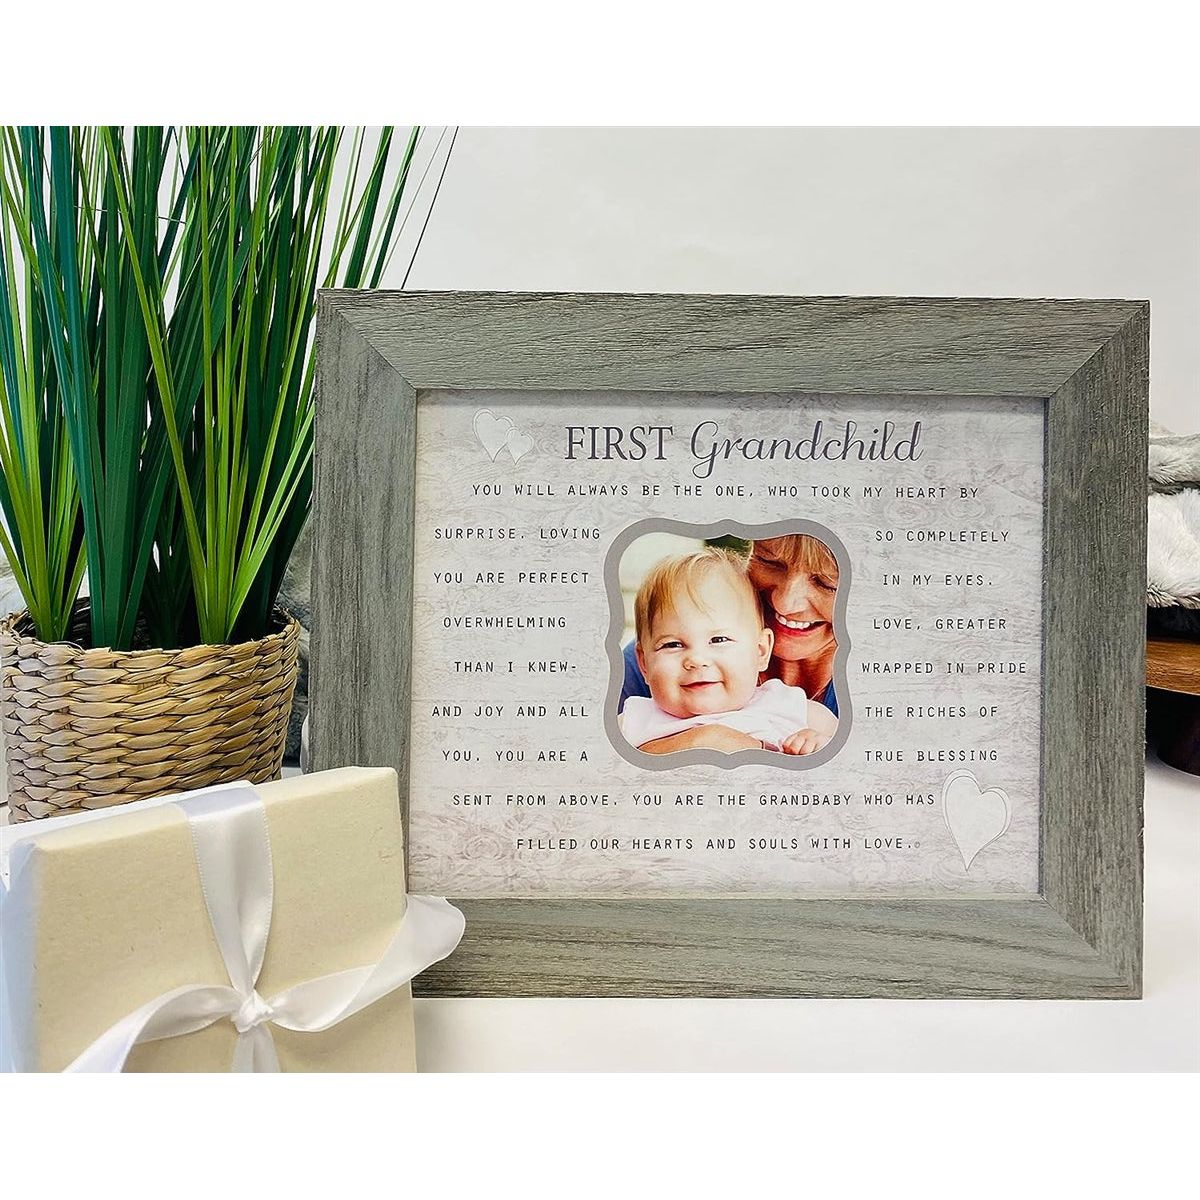 First Grandchild frame gift for new grandparent.